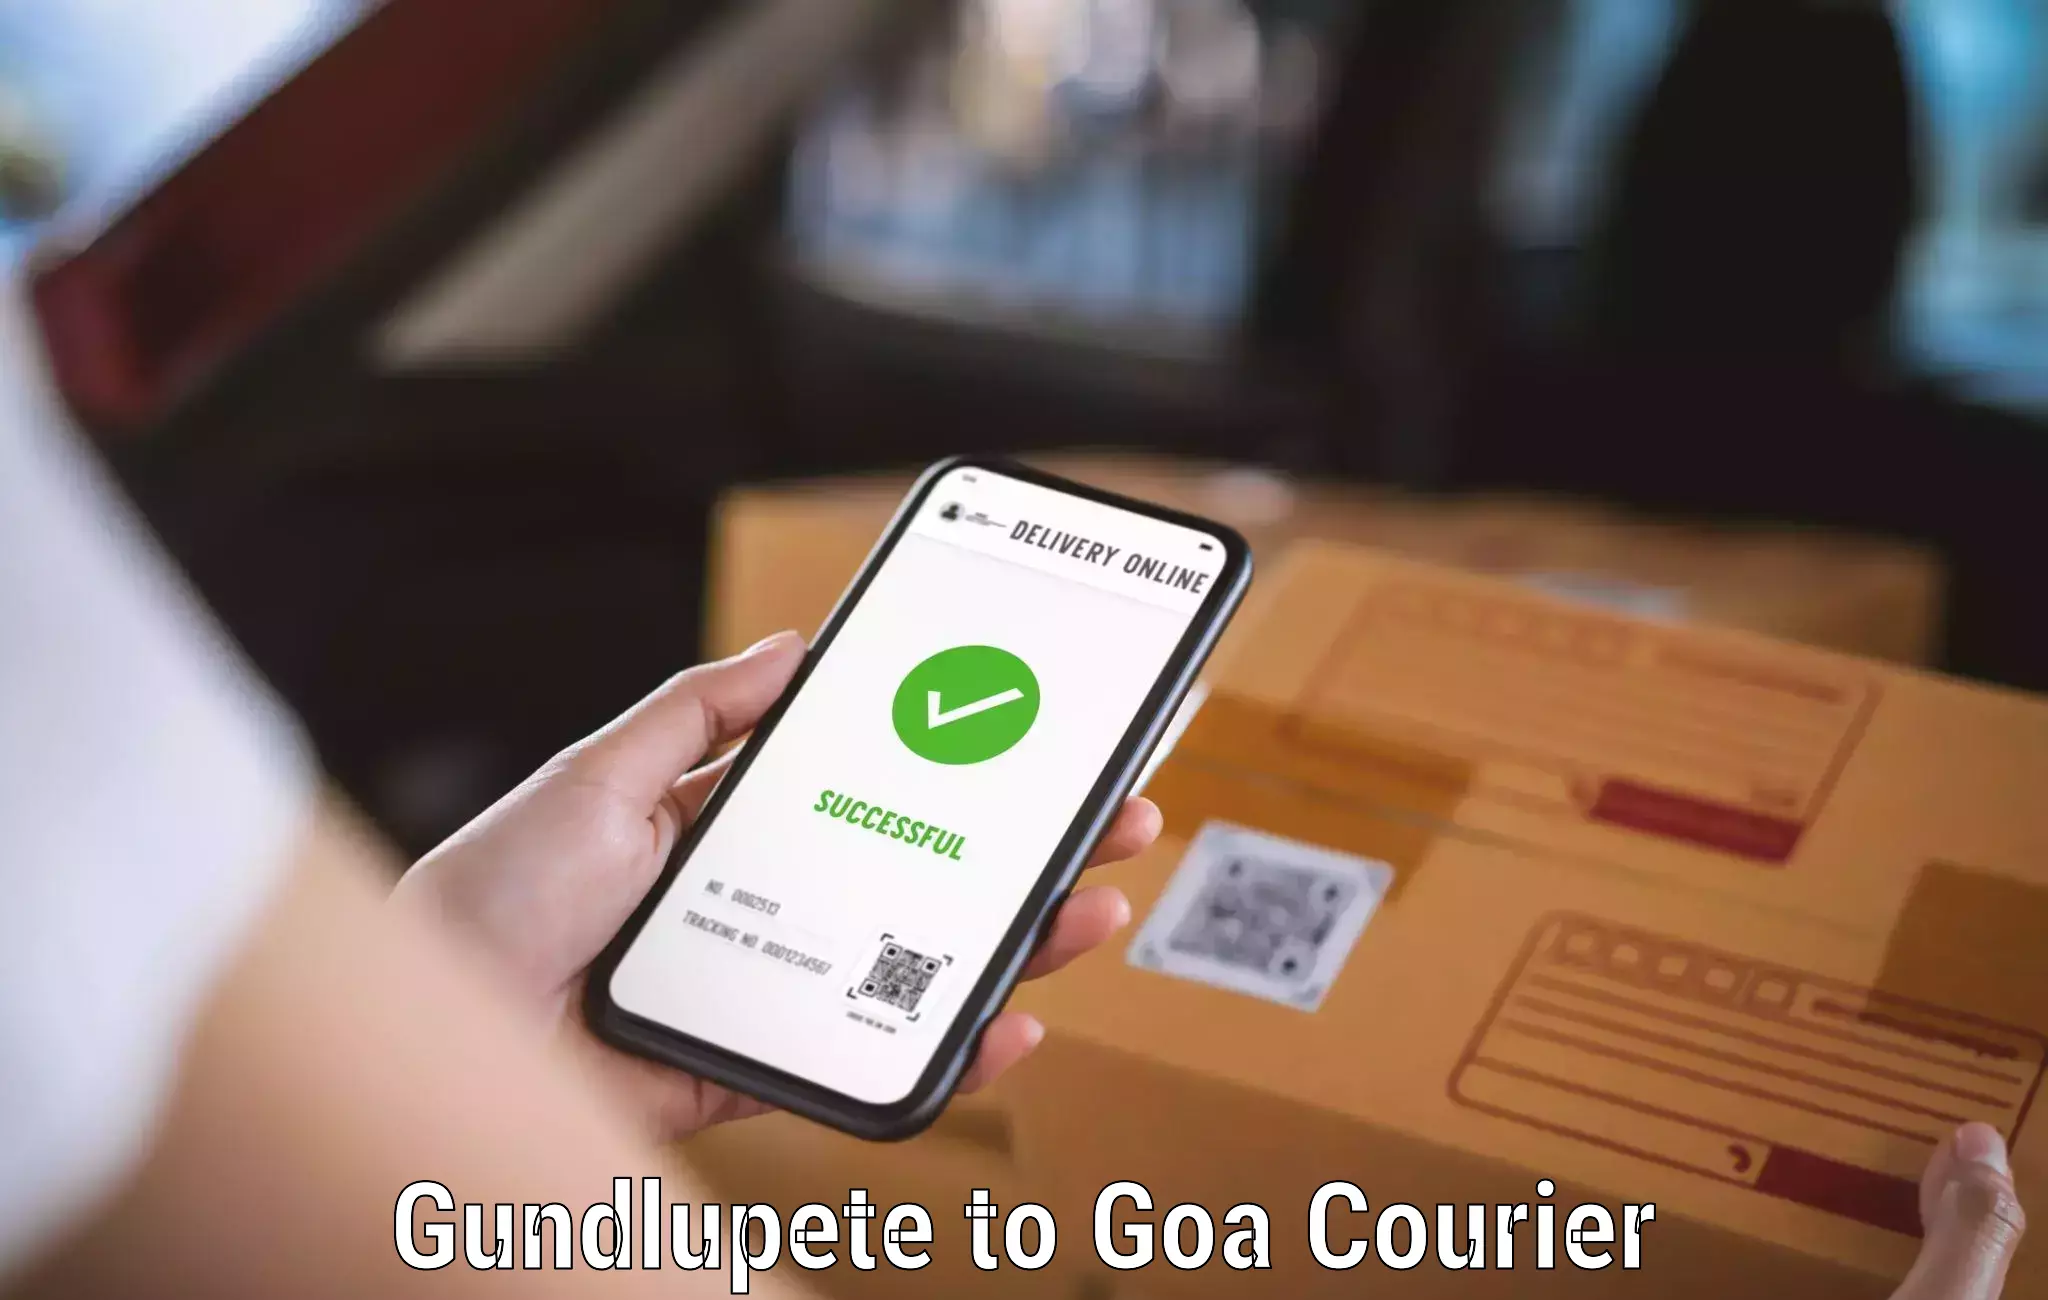 Easy return solutions Gundlupete to Goa